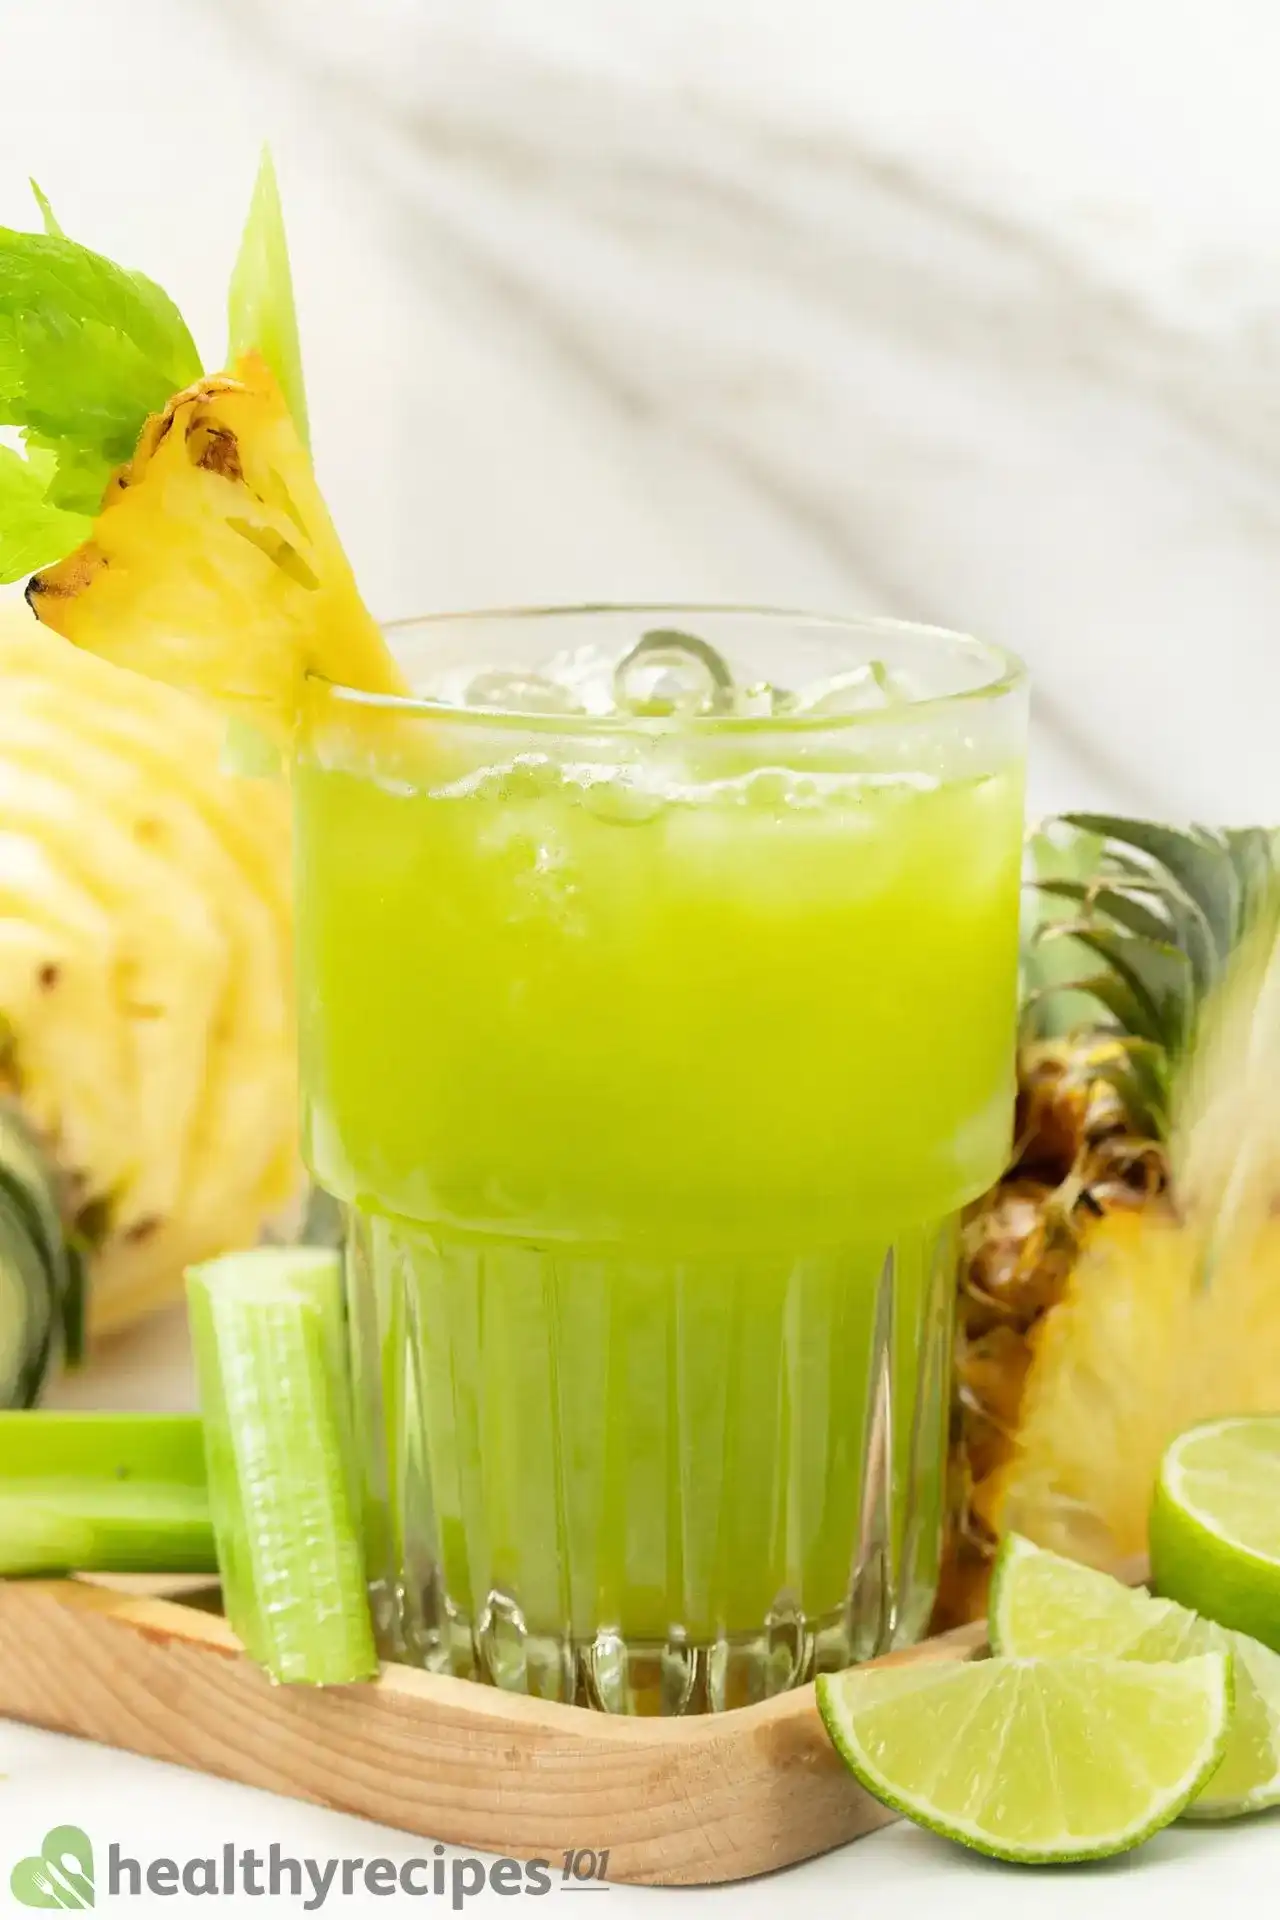 Pineapple Celery Juice Recipe - A Healthy Sweet & Mellow Drink